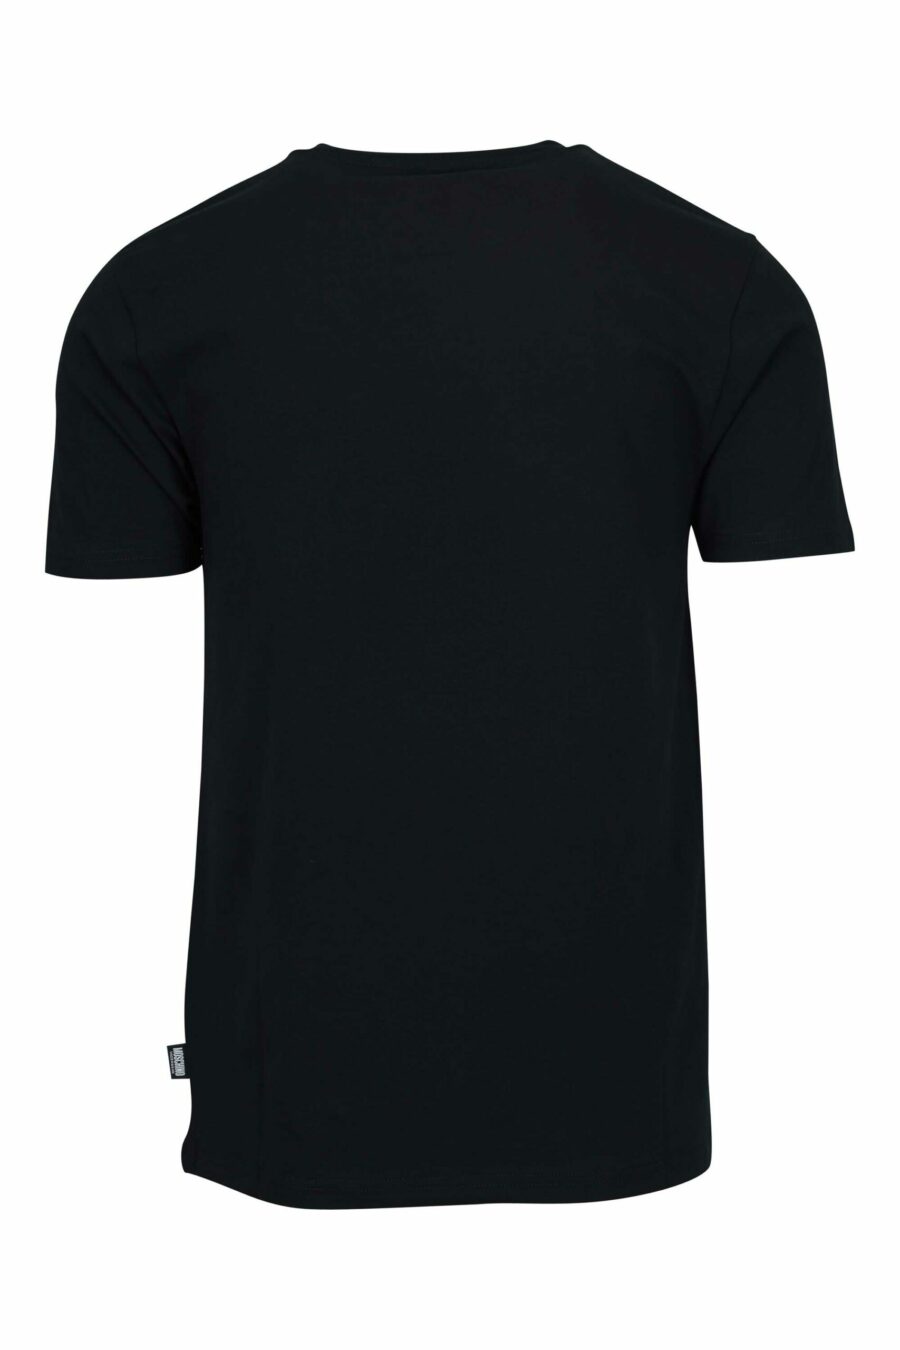 Camiseta negra con minilogo parche oso "underbear" - 667113605739 1 scaled